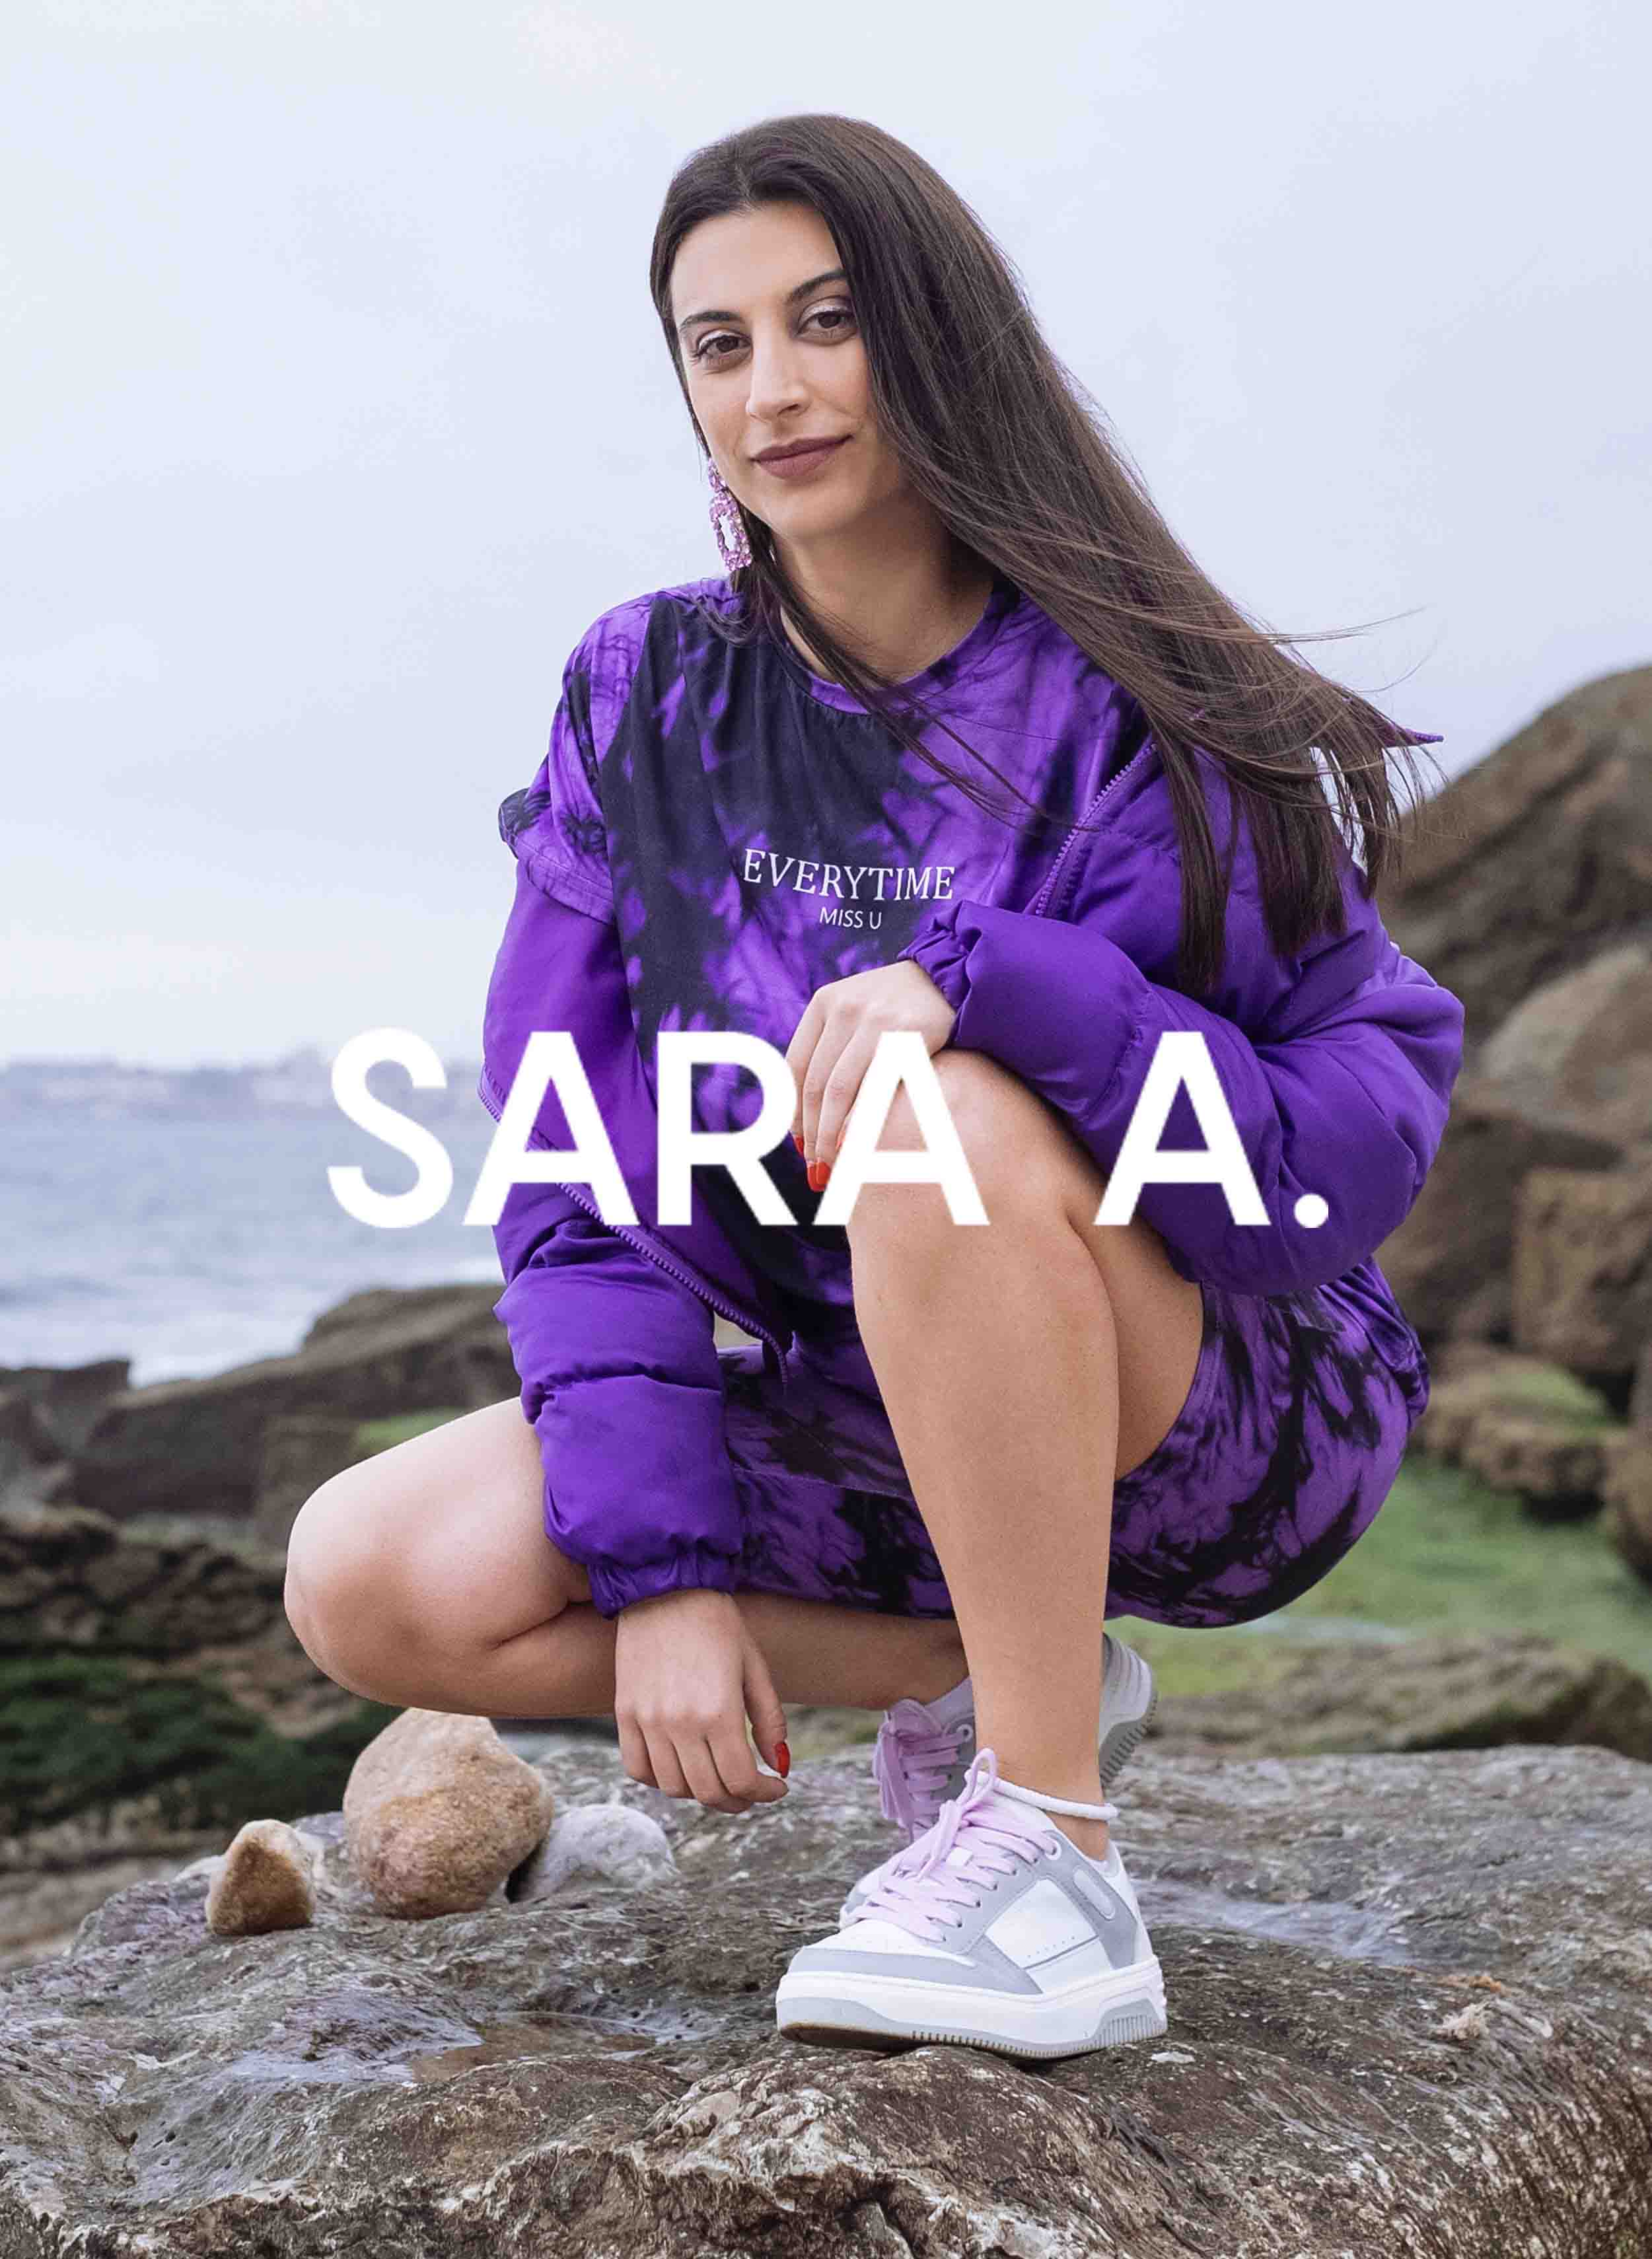 Sara indossa una camicia viola, abbinata a Diverge sneakers, mostrando le sue scarpe personalizzate e promuovendo l'impatto sociale attraverso il progetto Imagine.